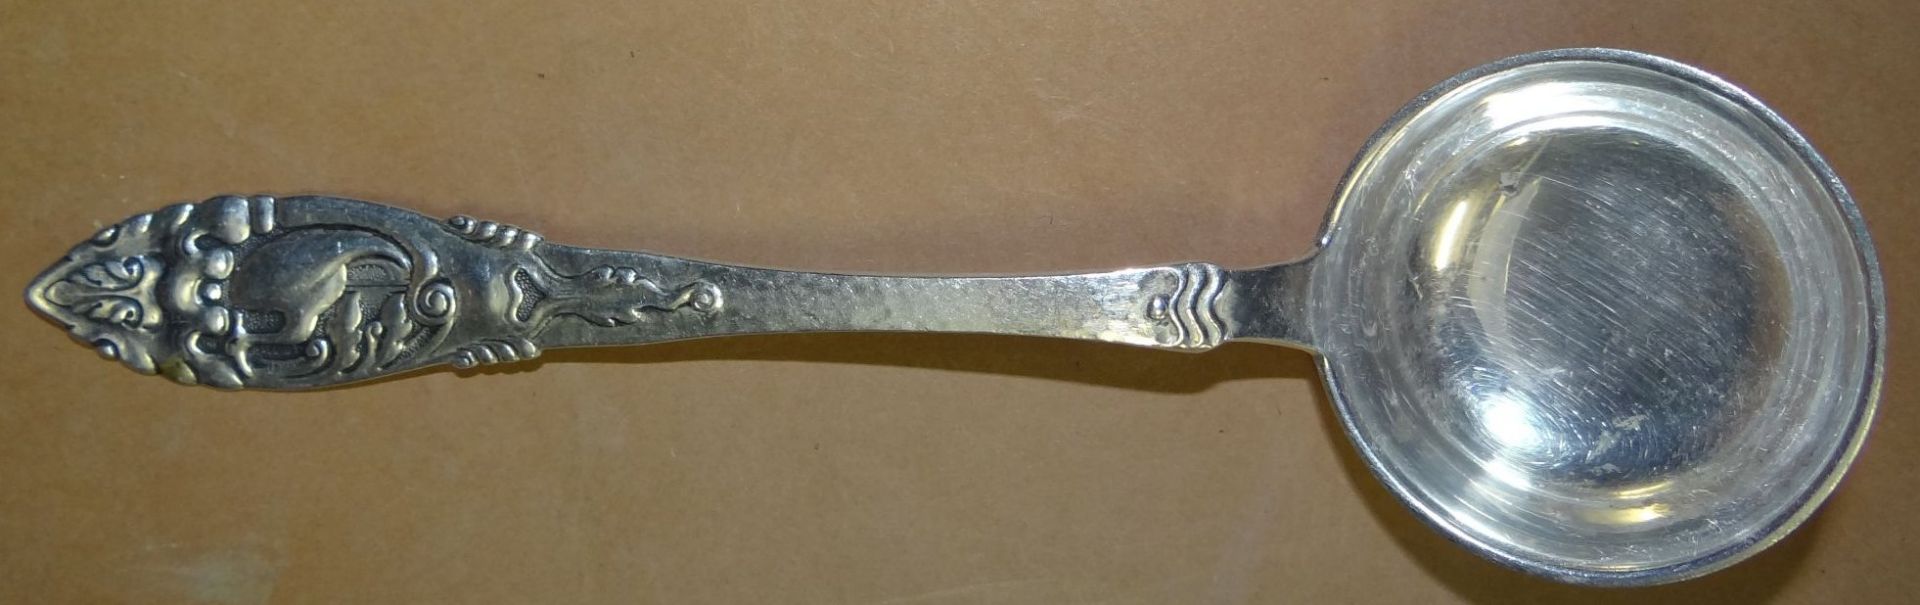 Sahnelöffel, Silber-830-, L-15 cm, 23 gr - Bild 3 aus 5